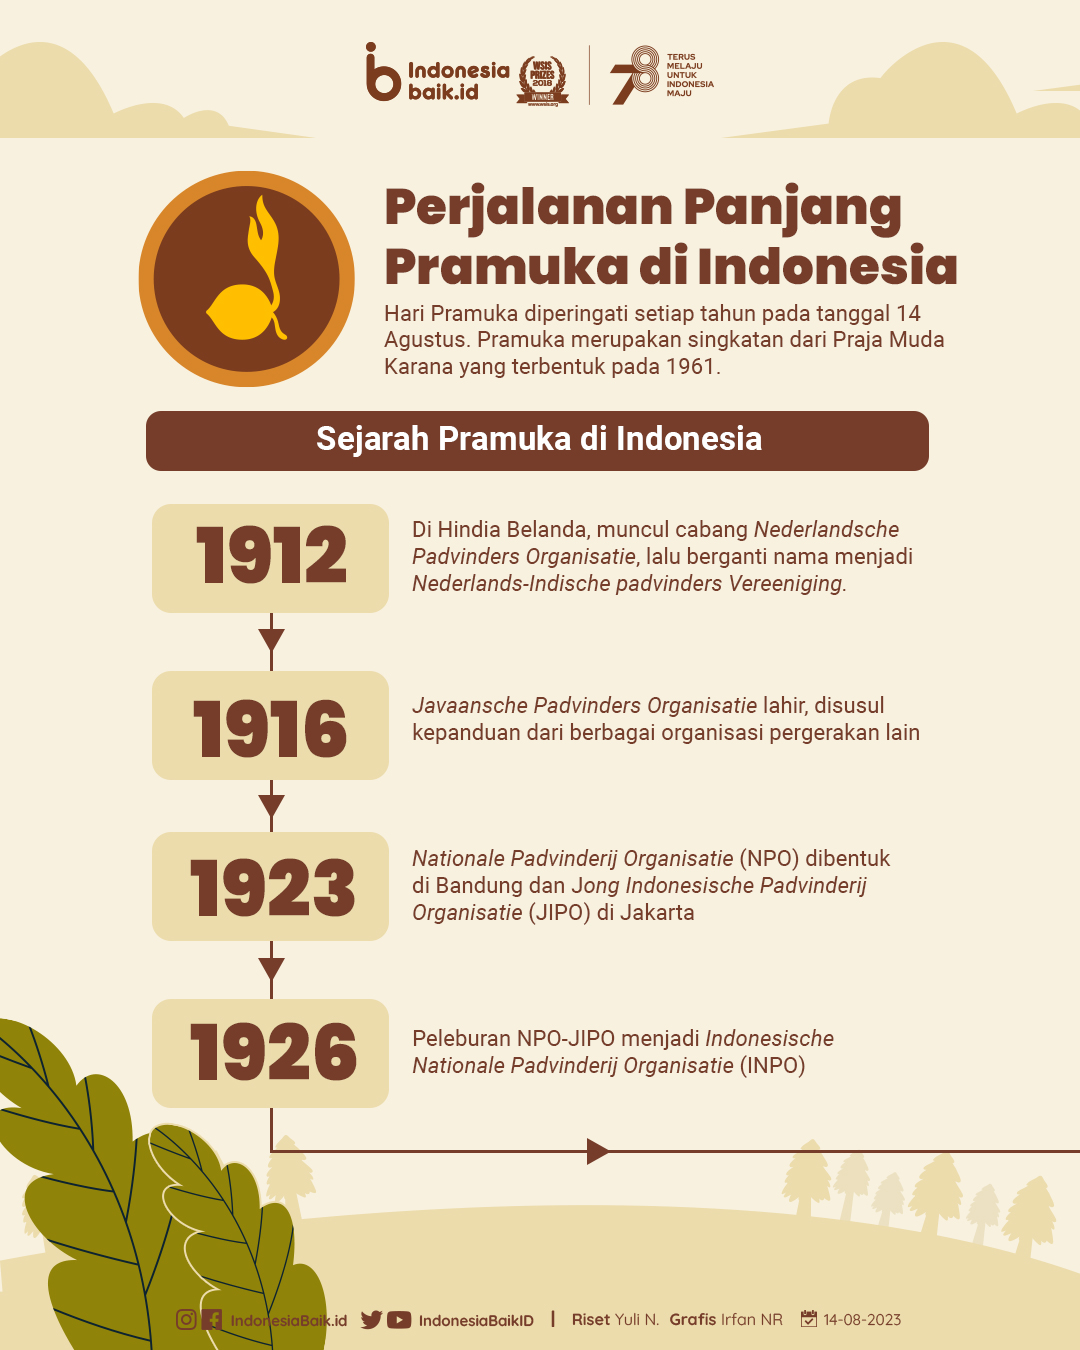 Sejarah Pramuka di Indonesia